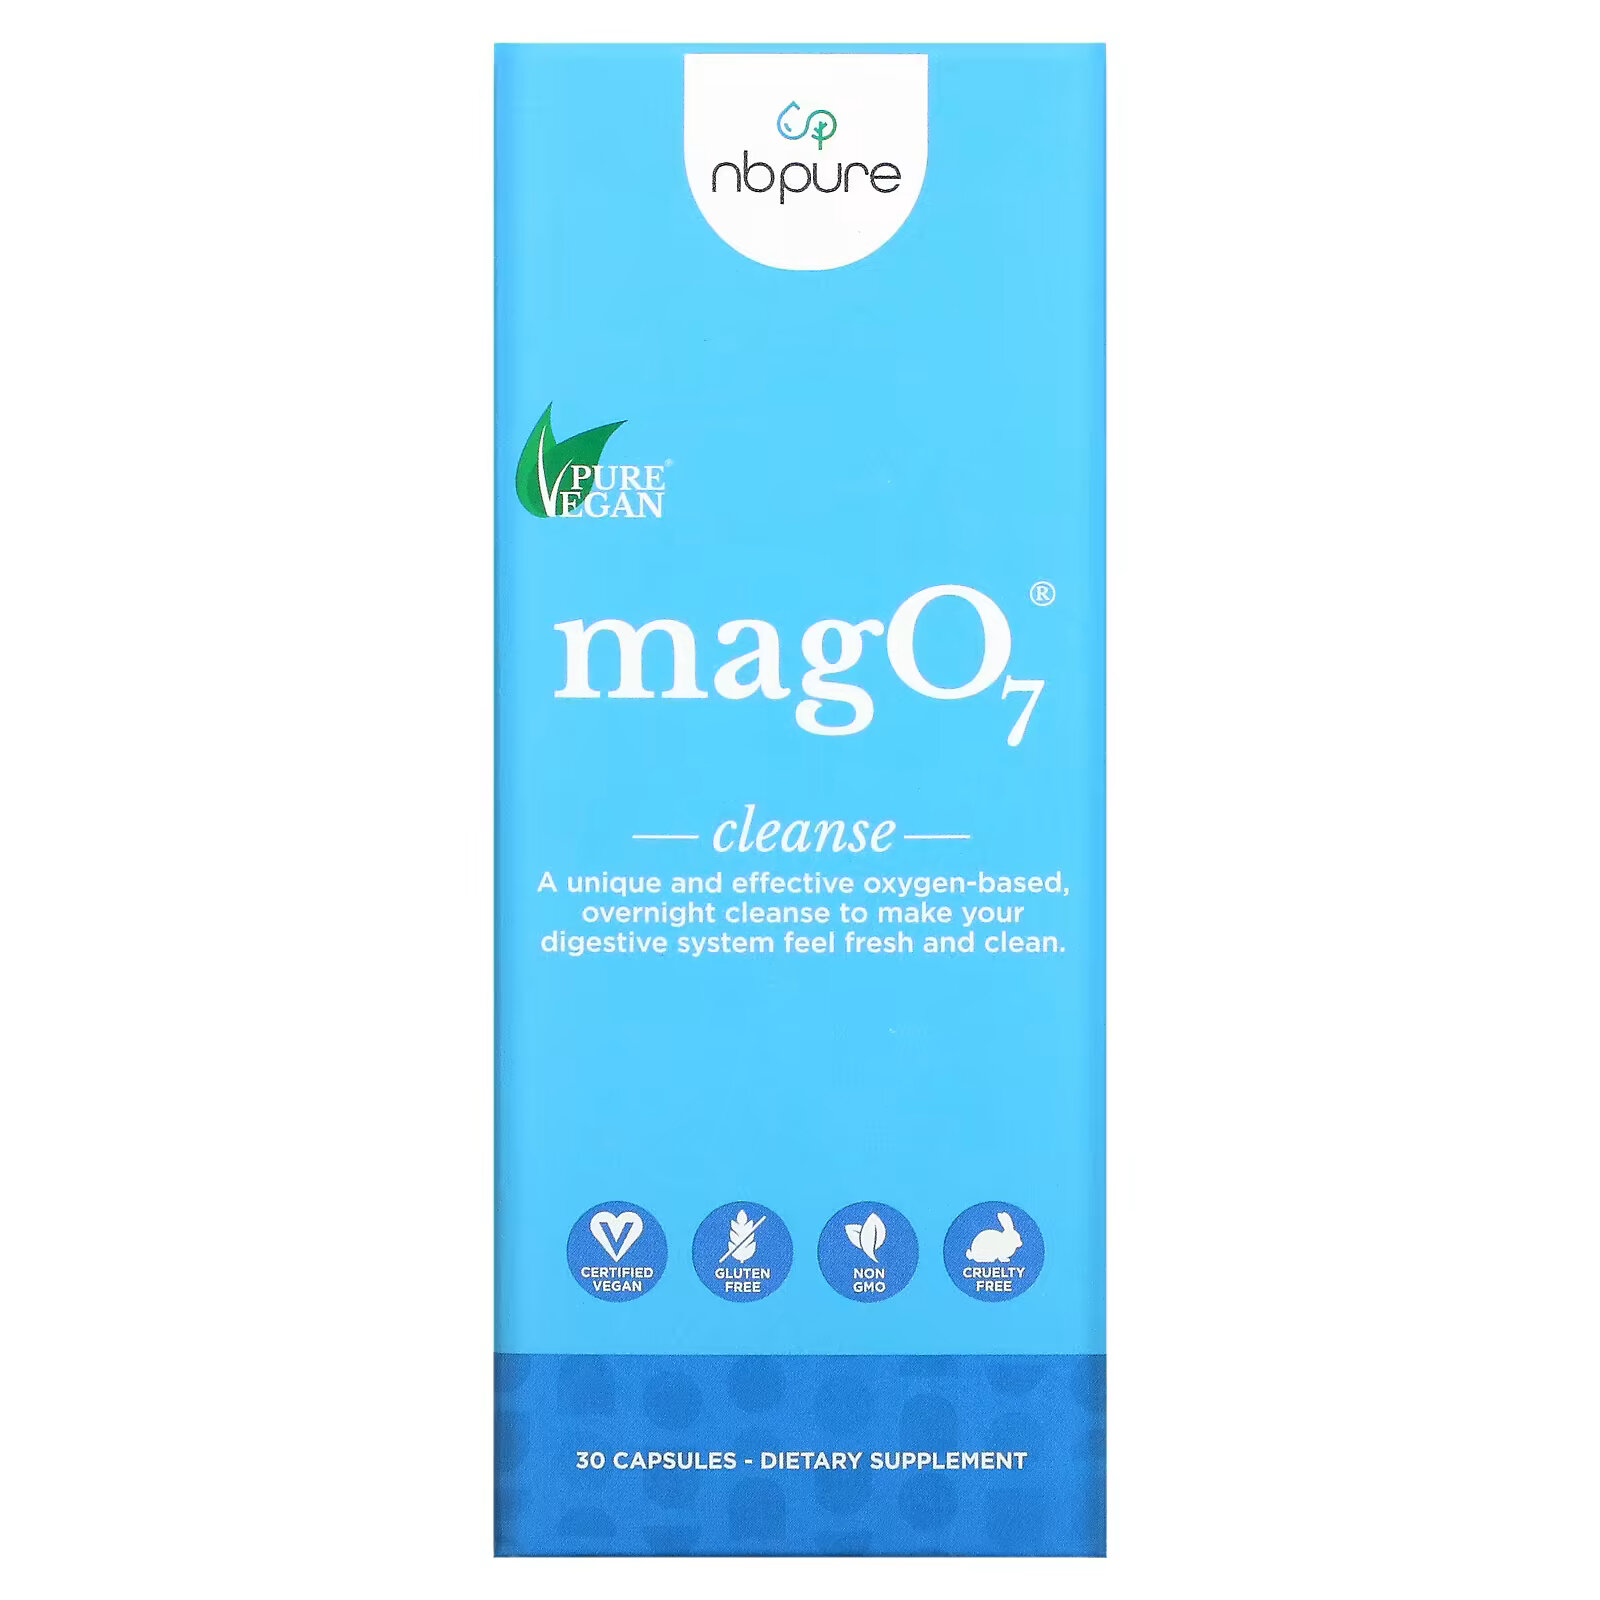 nb pure mago7 средство для чистки и детоксикации пищеварительного тракта 90 капсул NB Pure, MagO7`` 30 капсул